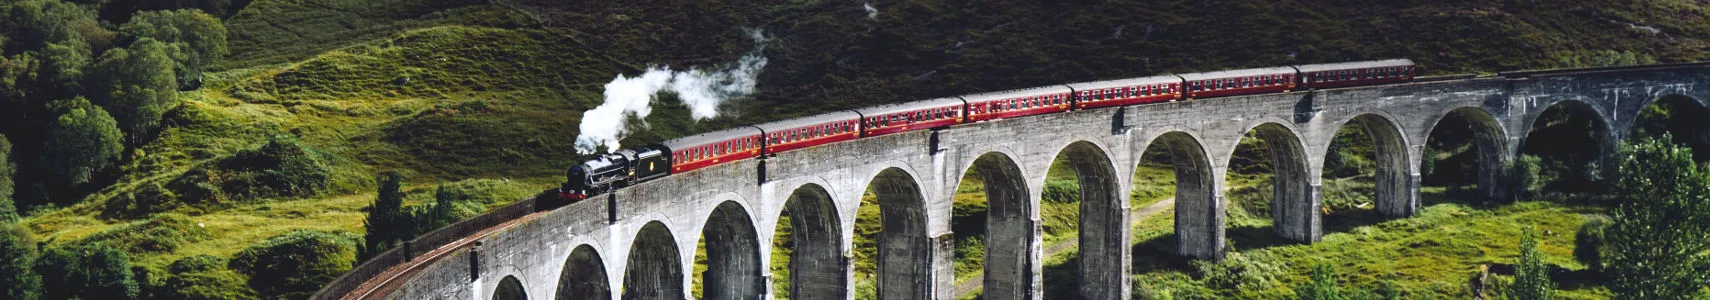 Bei der Anreise mit dem Zug können Reisende tolle Landschaften entdecken